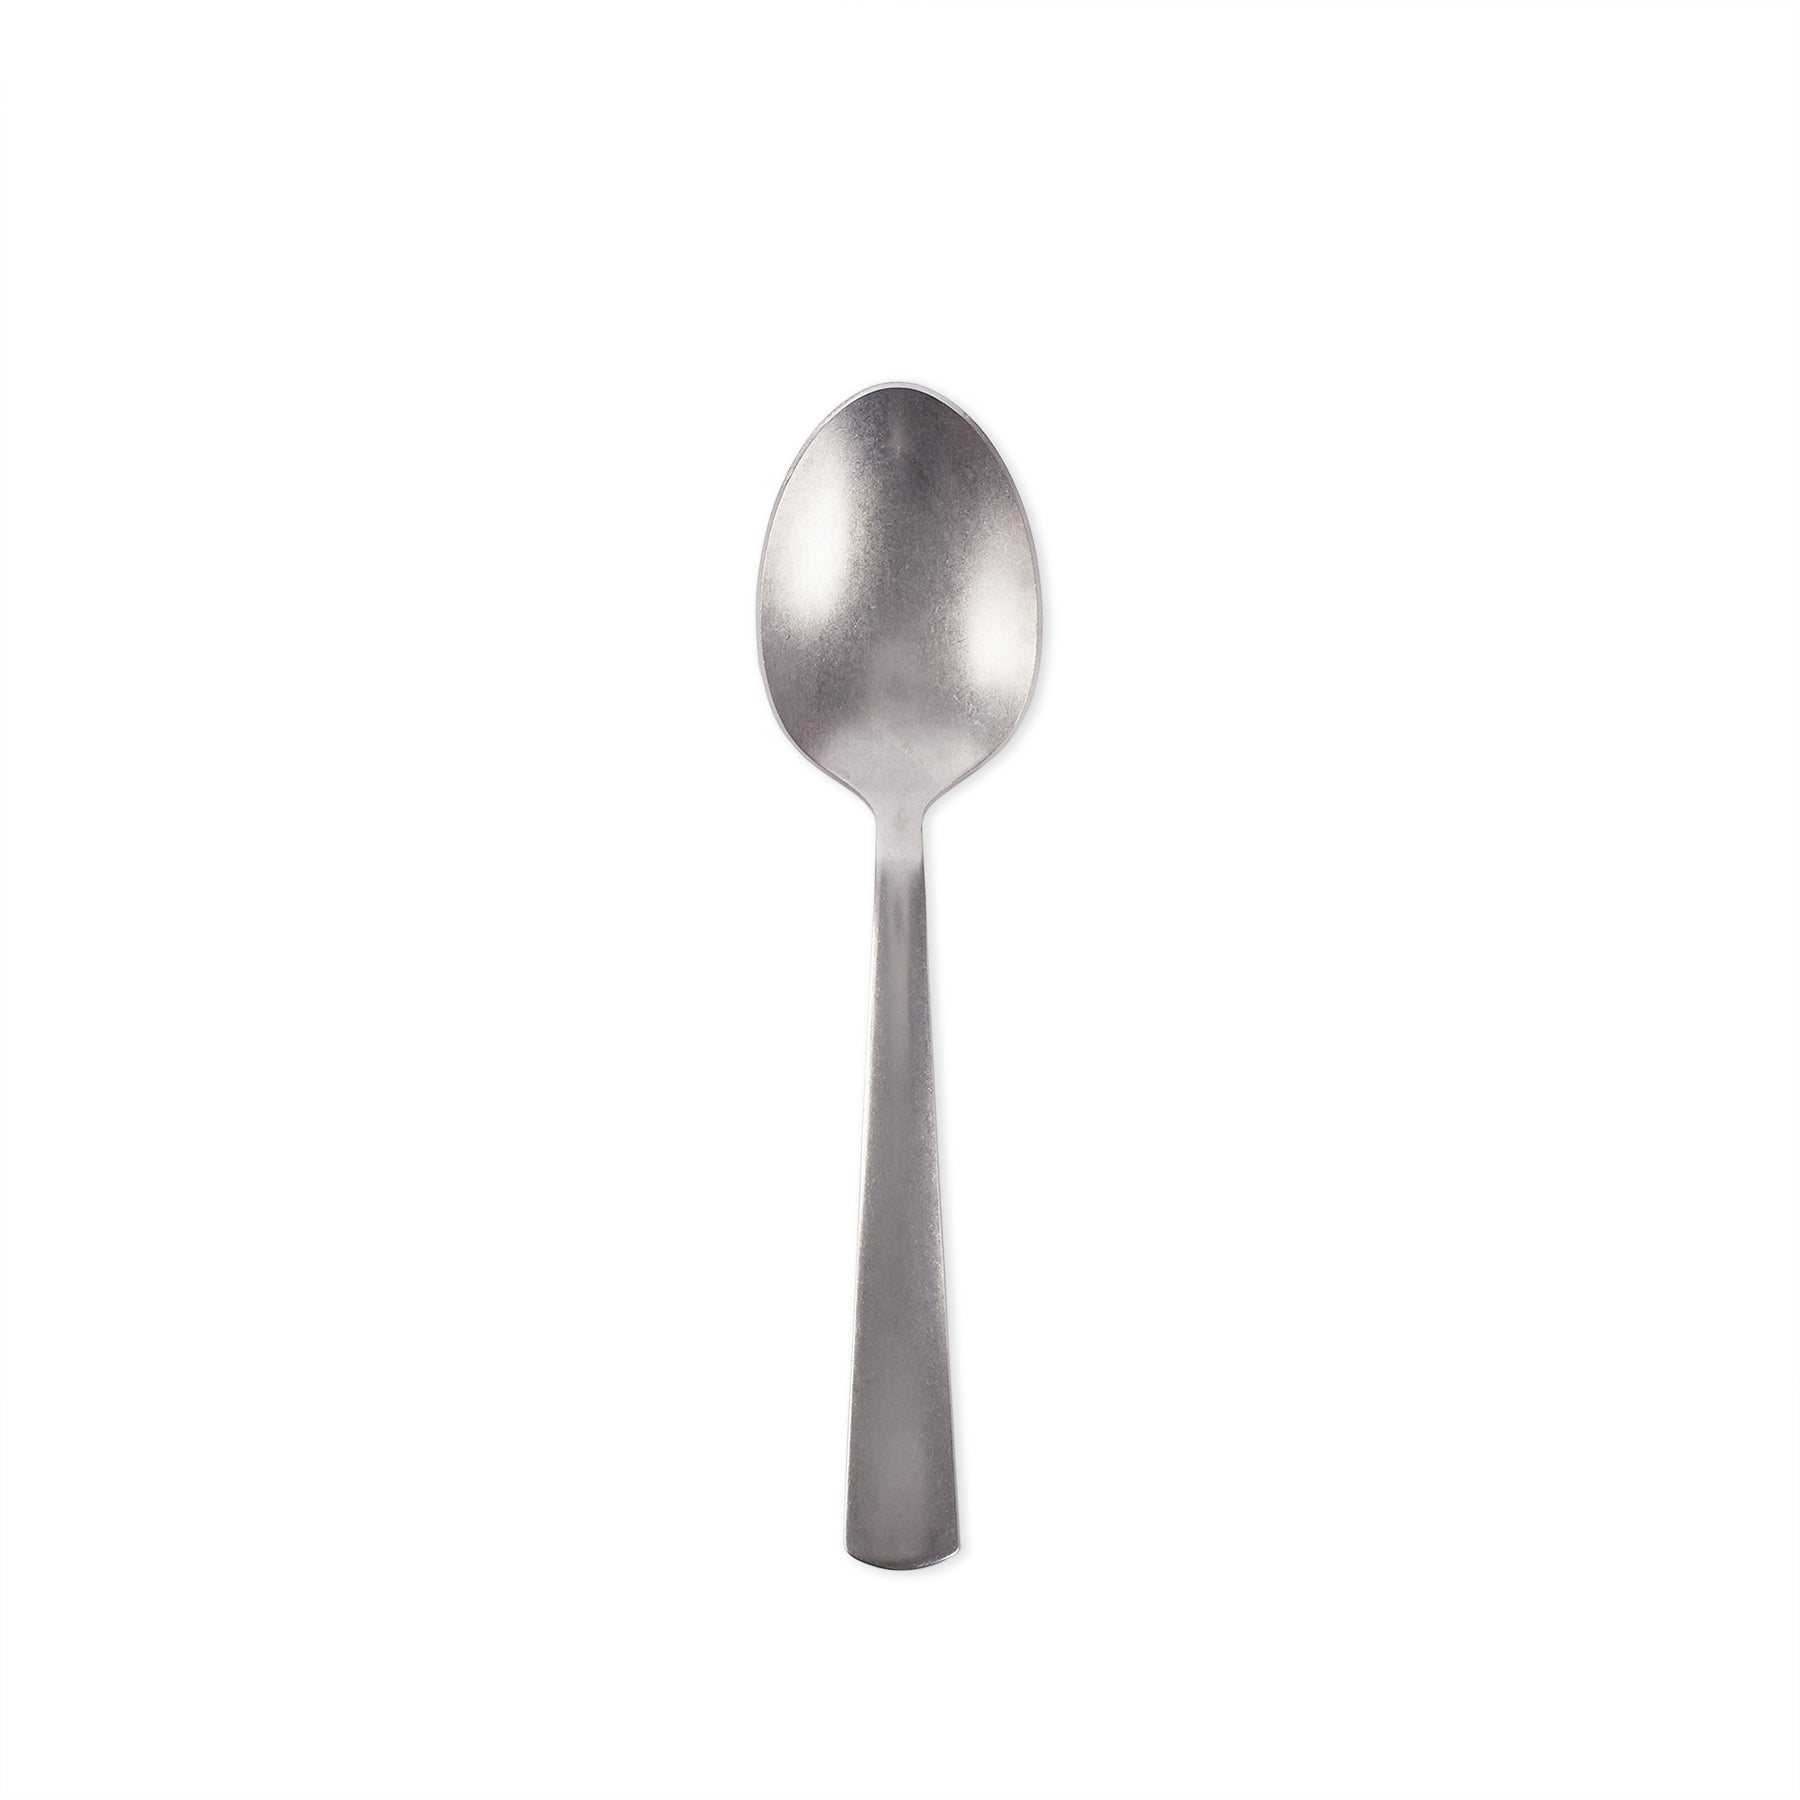 American Industrial Serving Spoon Zoom Image 1